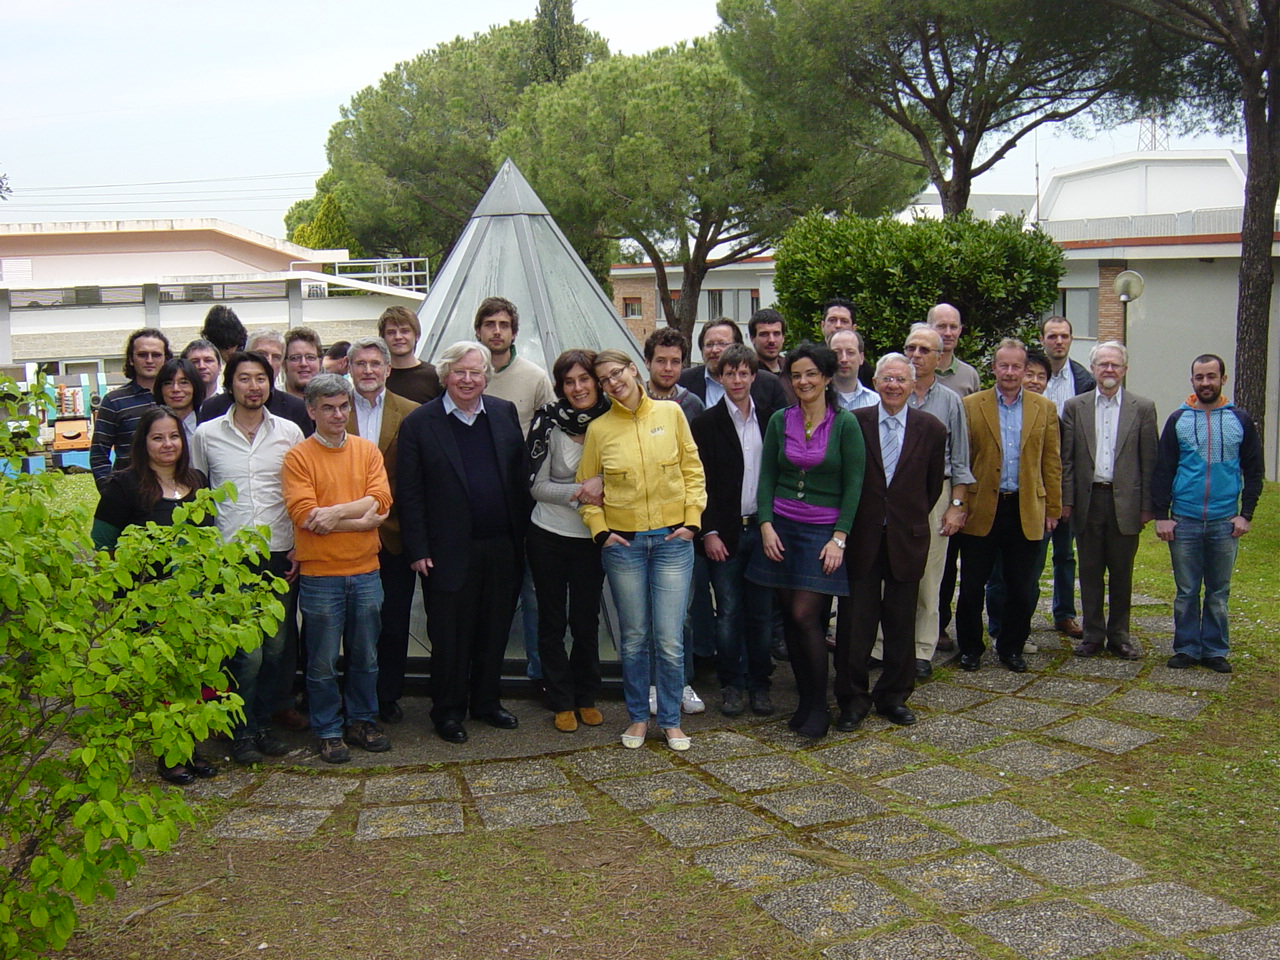 Last meeting in Frascati with prof. Paul Kienle